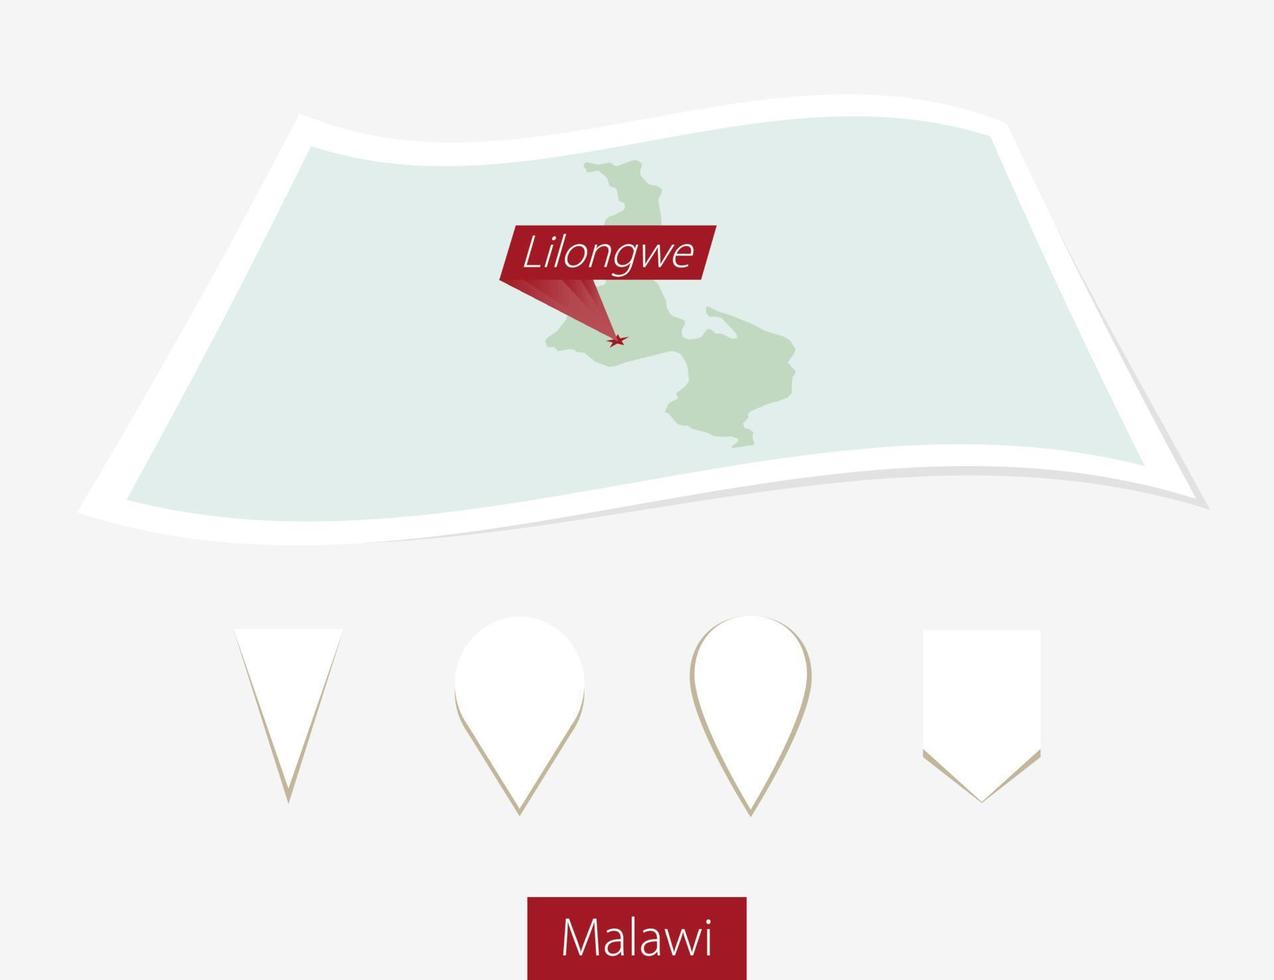 gebogen Papier Karte von Malawi mit Hauptstadt lilongwe auf grau Hintergrund. vier anders Karte Stift Satz. vektor